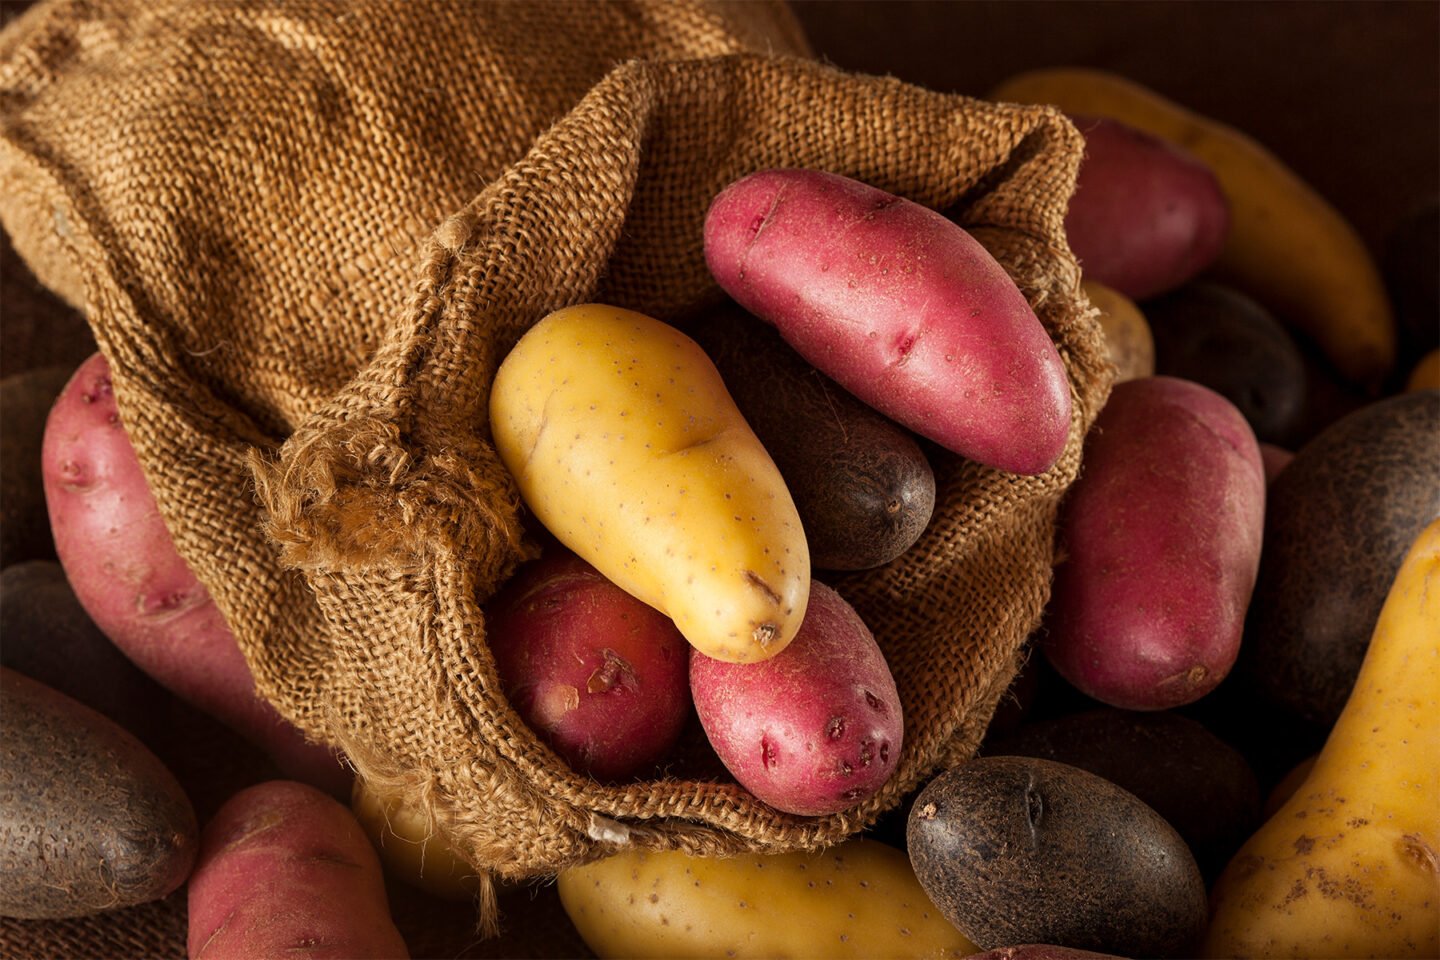 raw potatoes in burlap sack